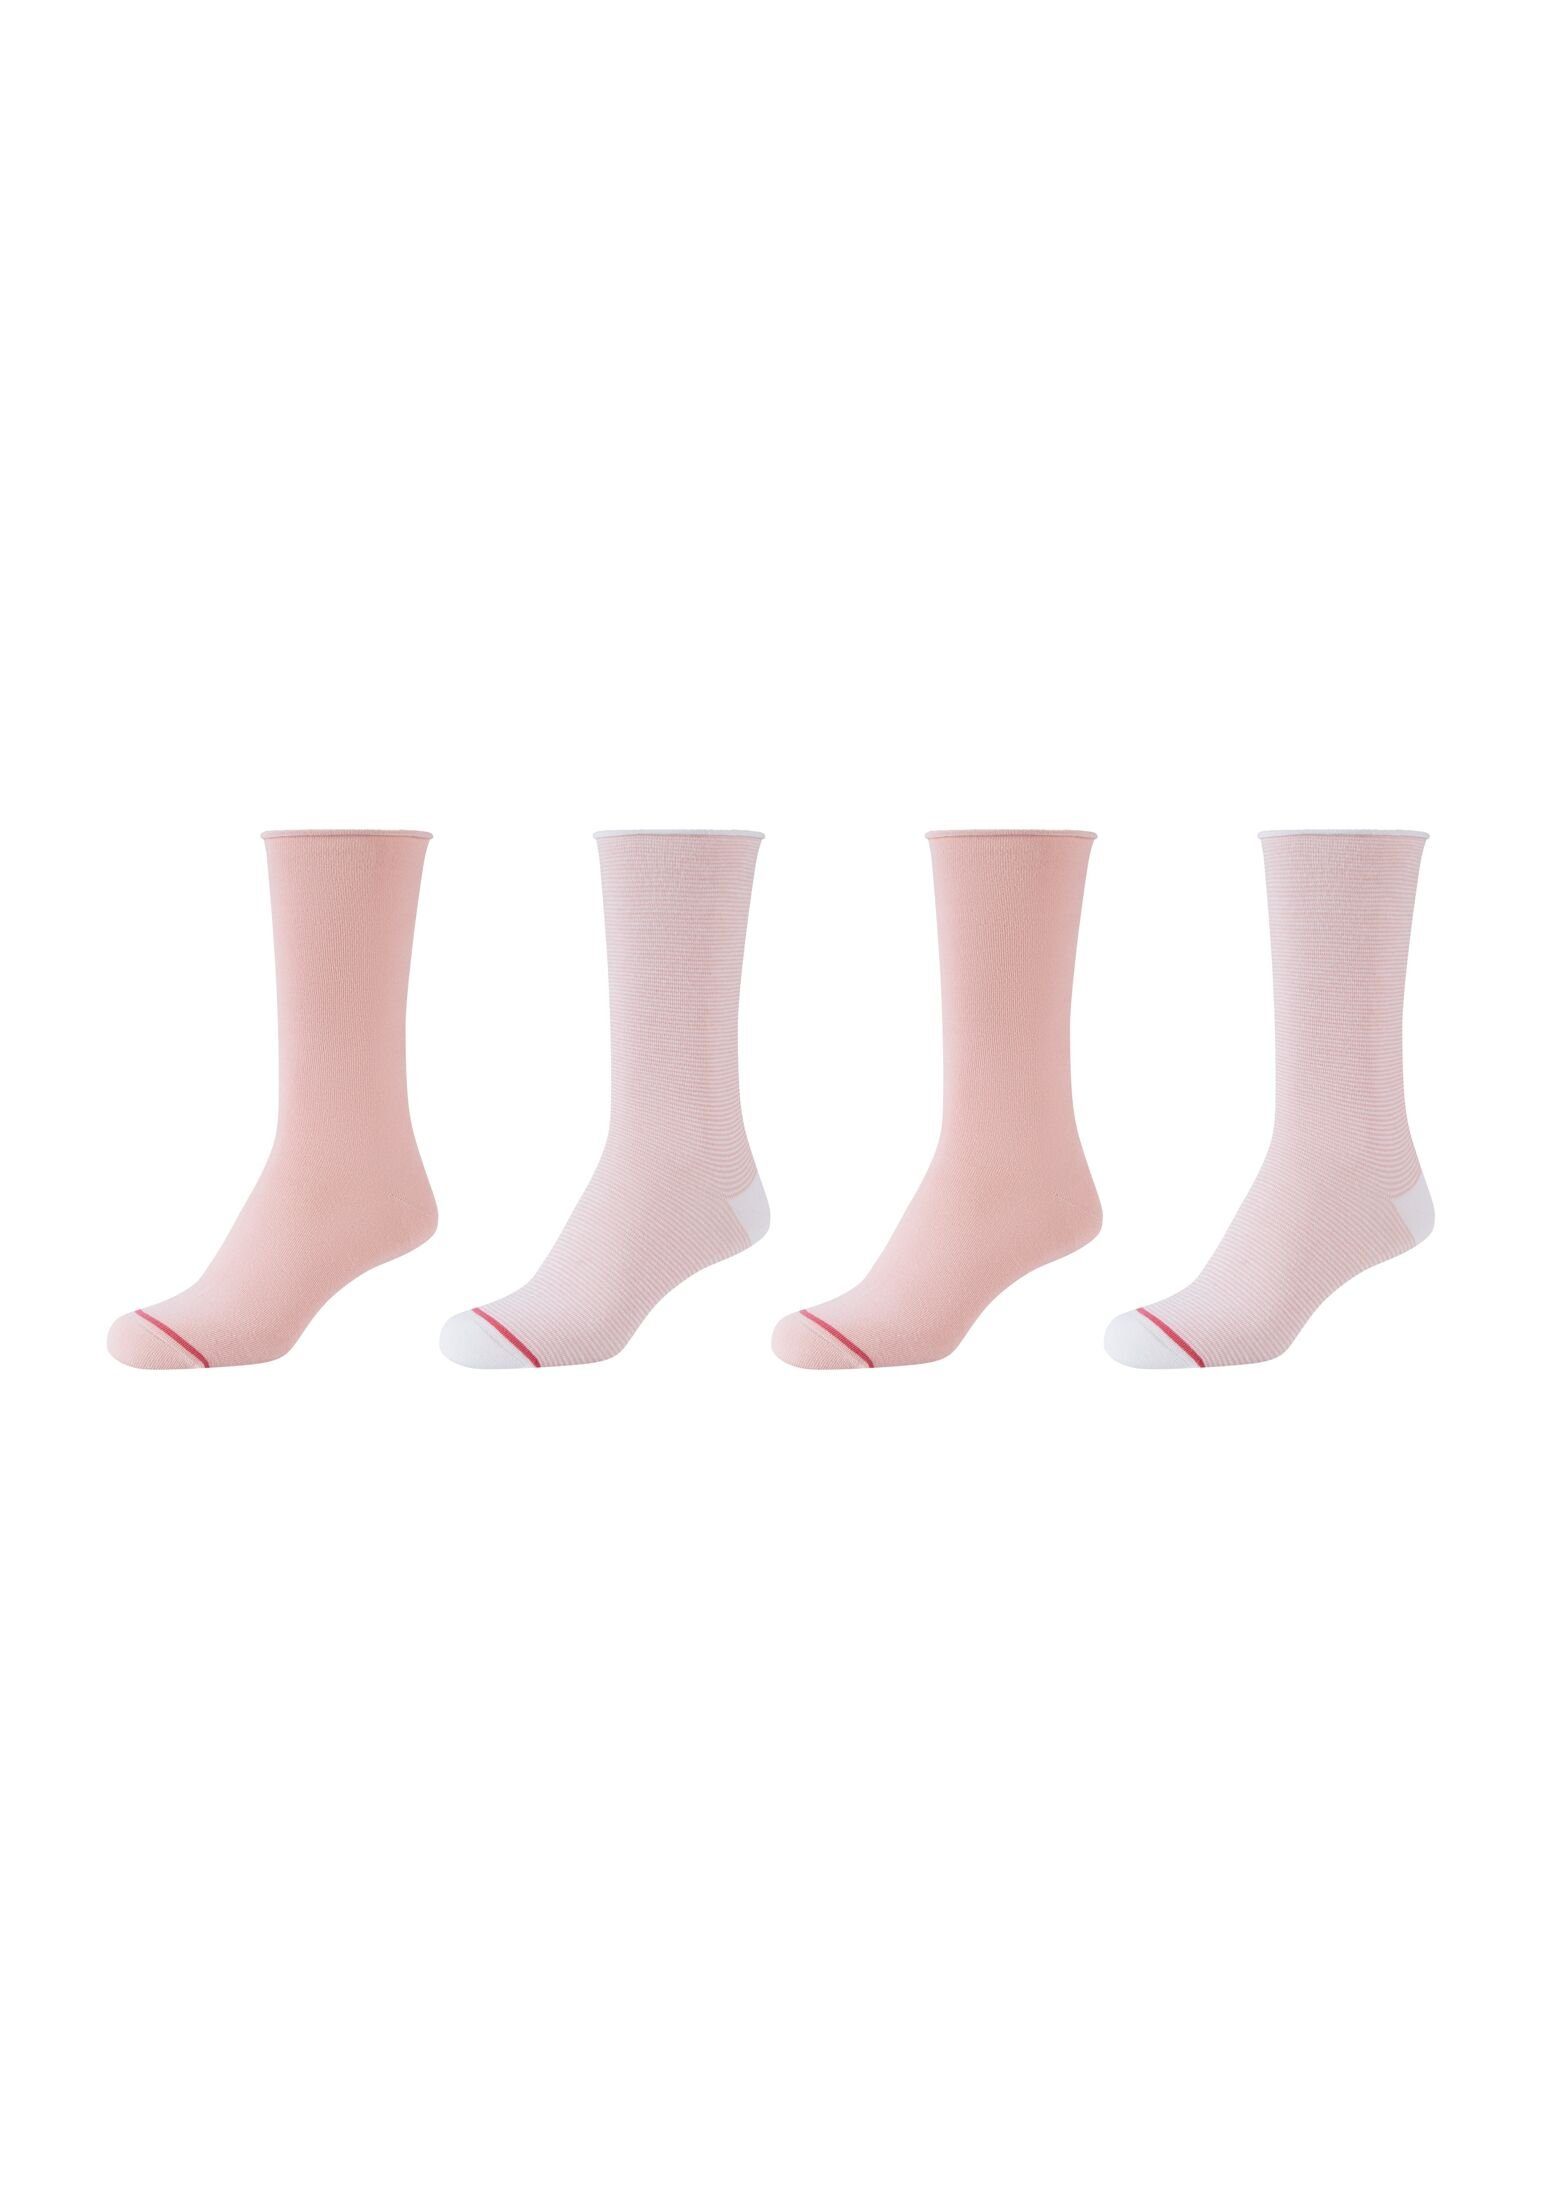 s.Oliver Socken Socken 4er Pack, Vielseitig: mit zartem Muster perfekt für  jede Gelegenheit | Kurzsocken